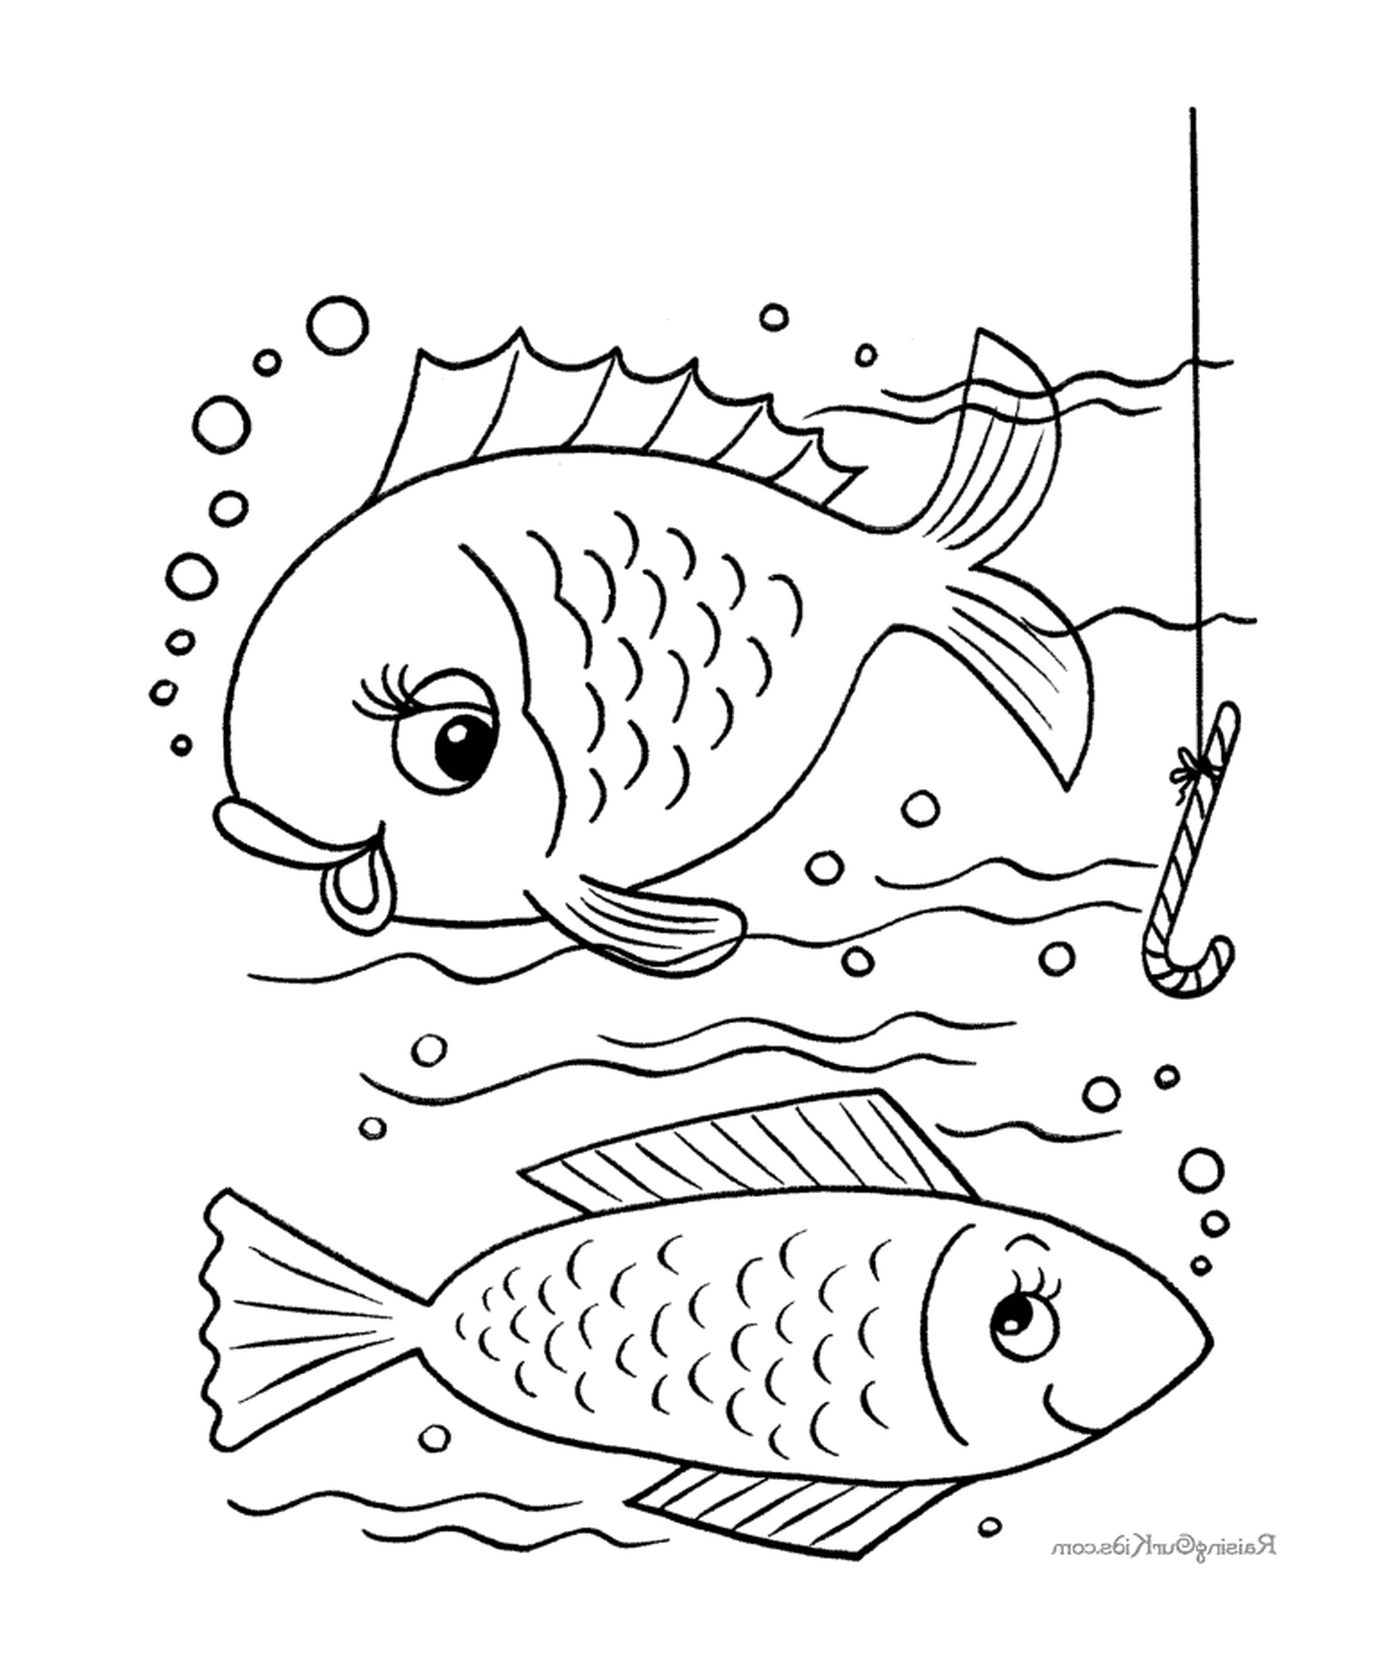   Deux poissons nagent dans l'eau pendant qu'un autre pêche 